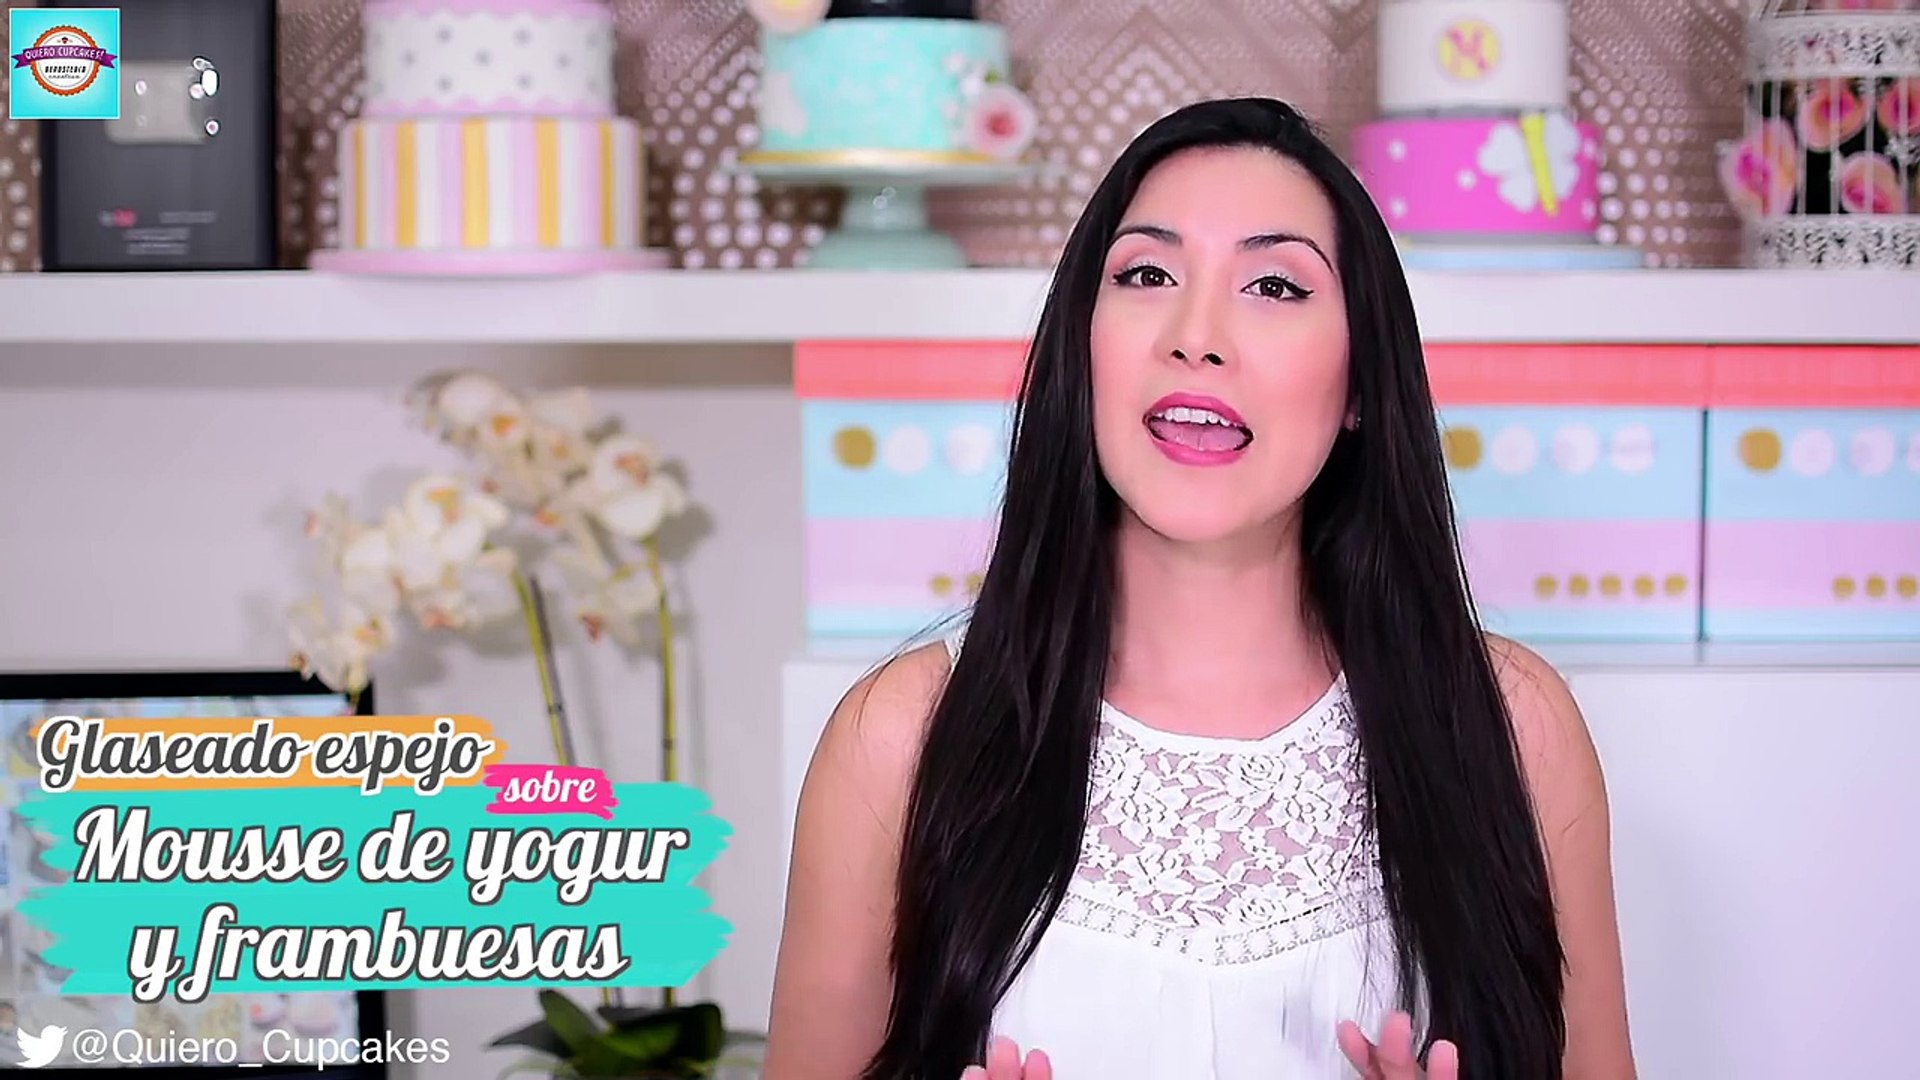 Glaseado espejo sobre mousse de yogur y frambuesa | Mirror Glaze | Quiero  Cupcakes! – Видео Dailymotion